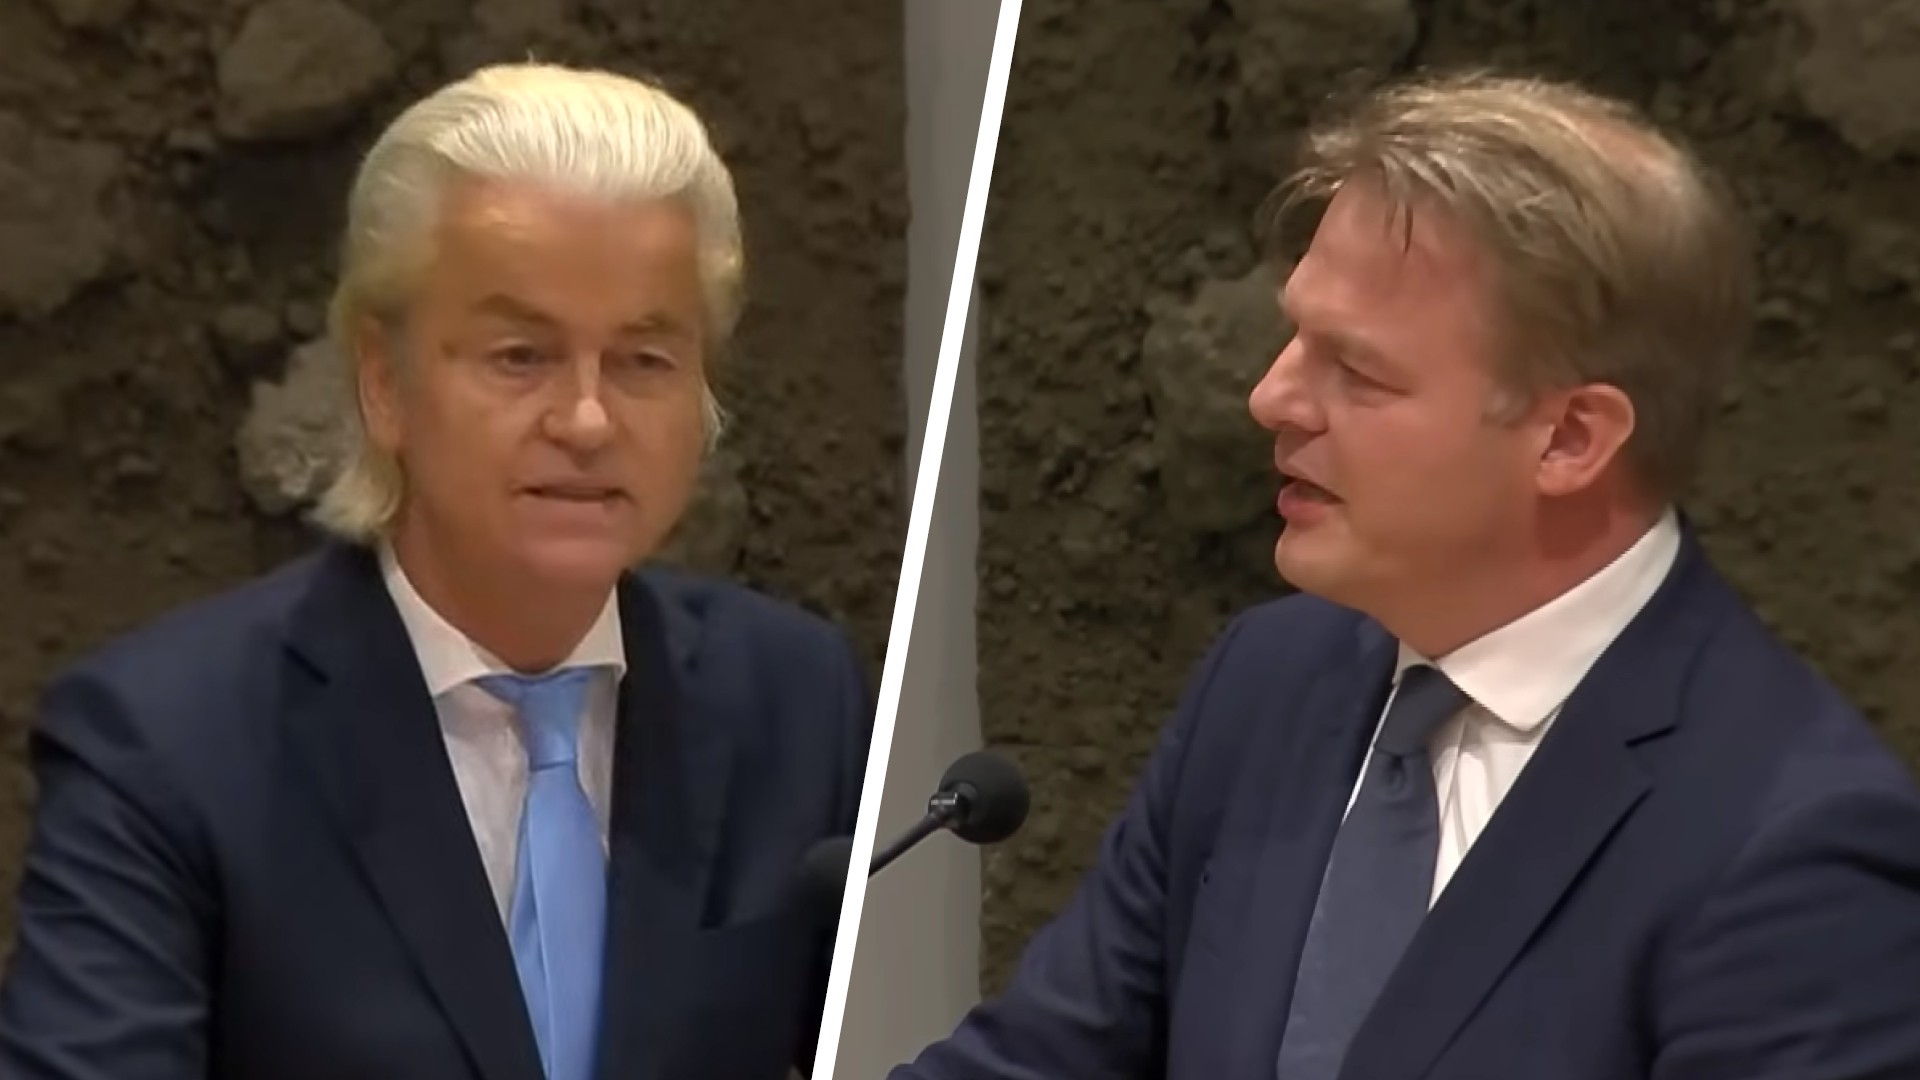 De hypocrisie van Omtzigt: waarom mag Wilders niet aan de Grondwet komen?